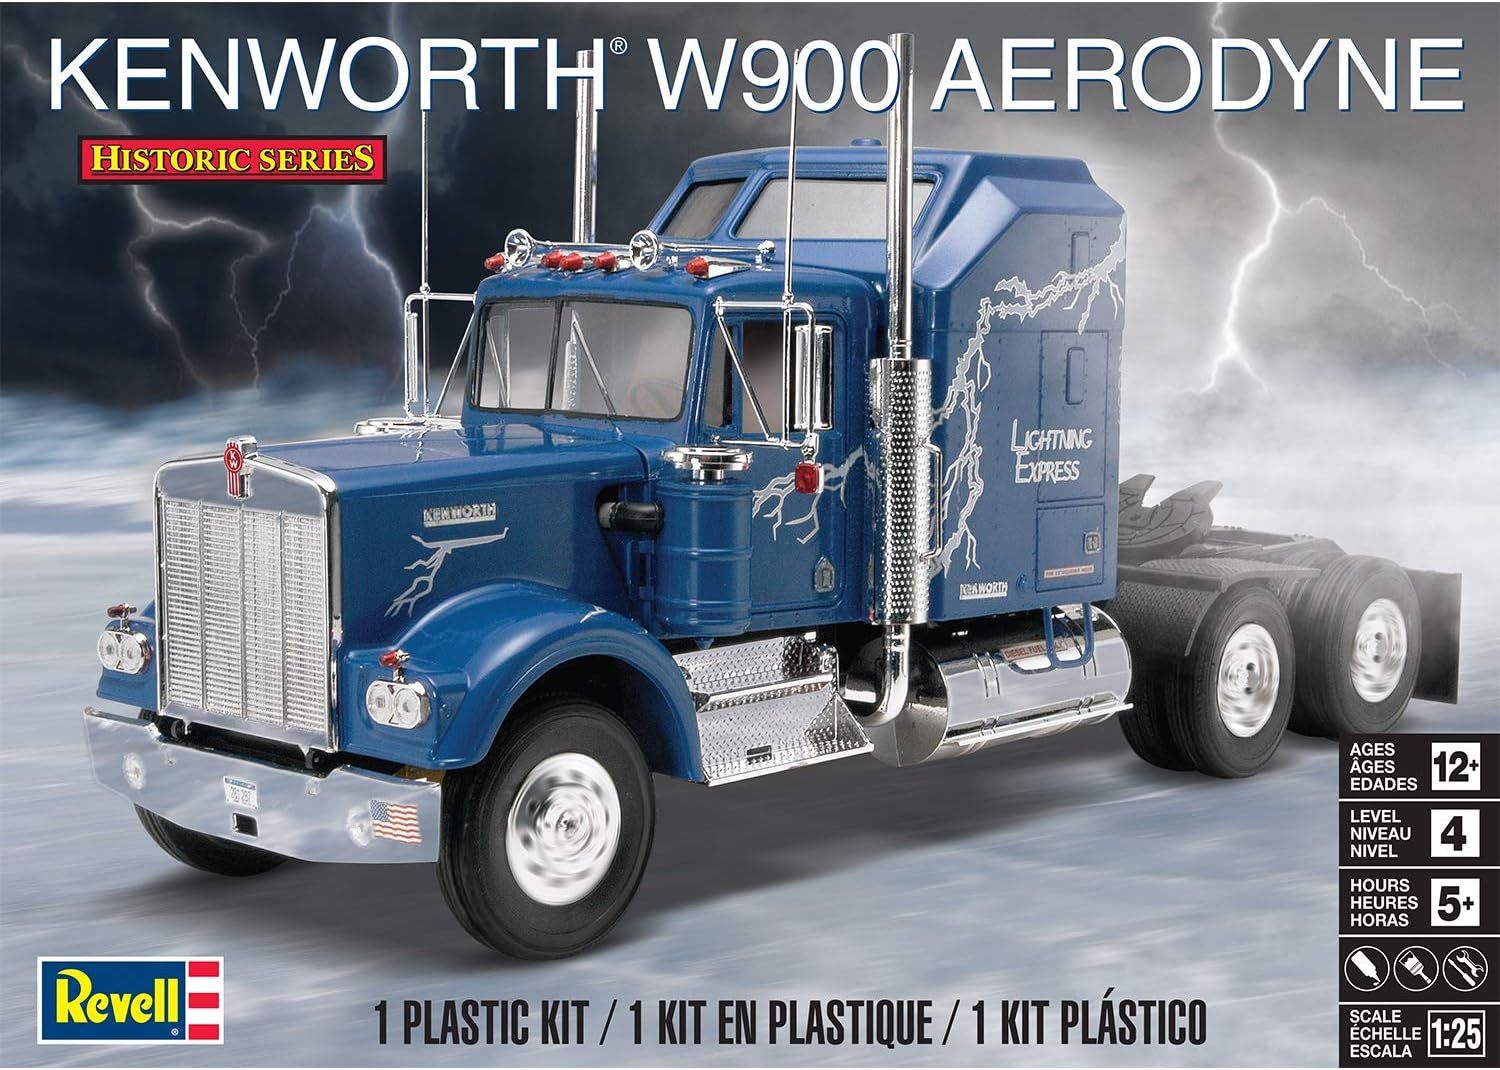 Revell 1/25 Kenworth W900 Aerodyne Model Kit